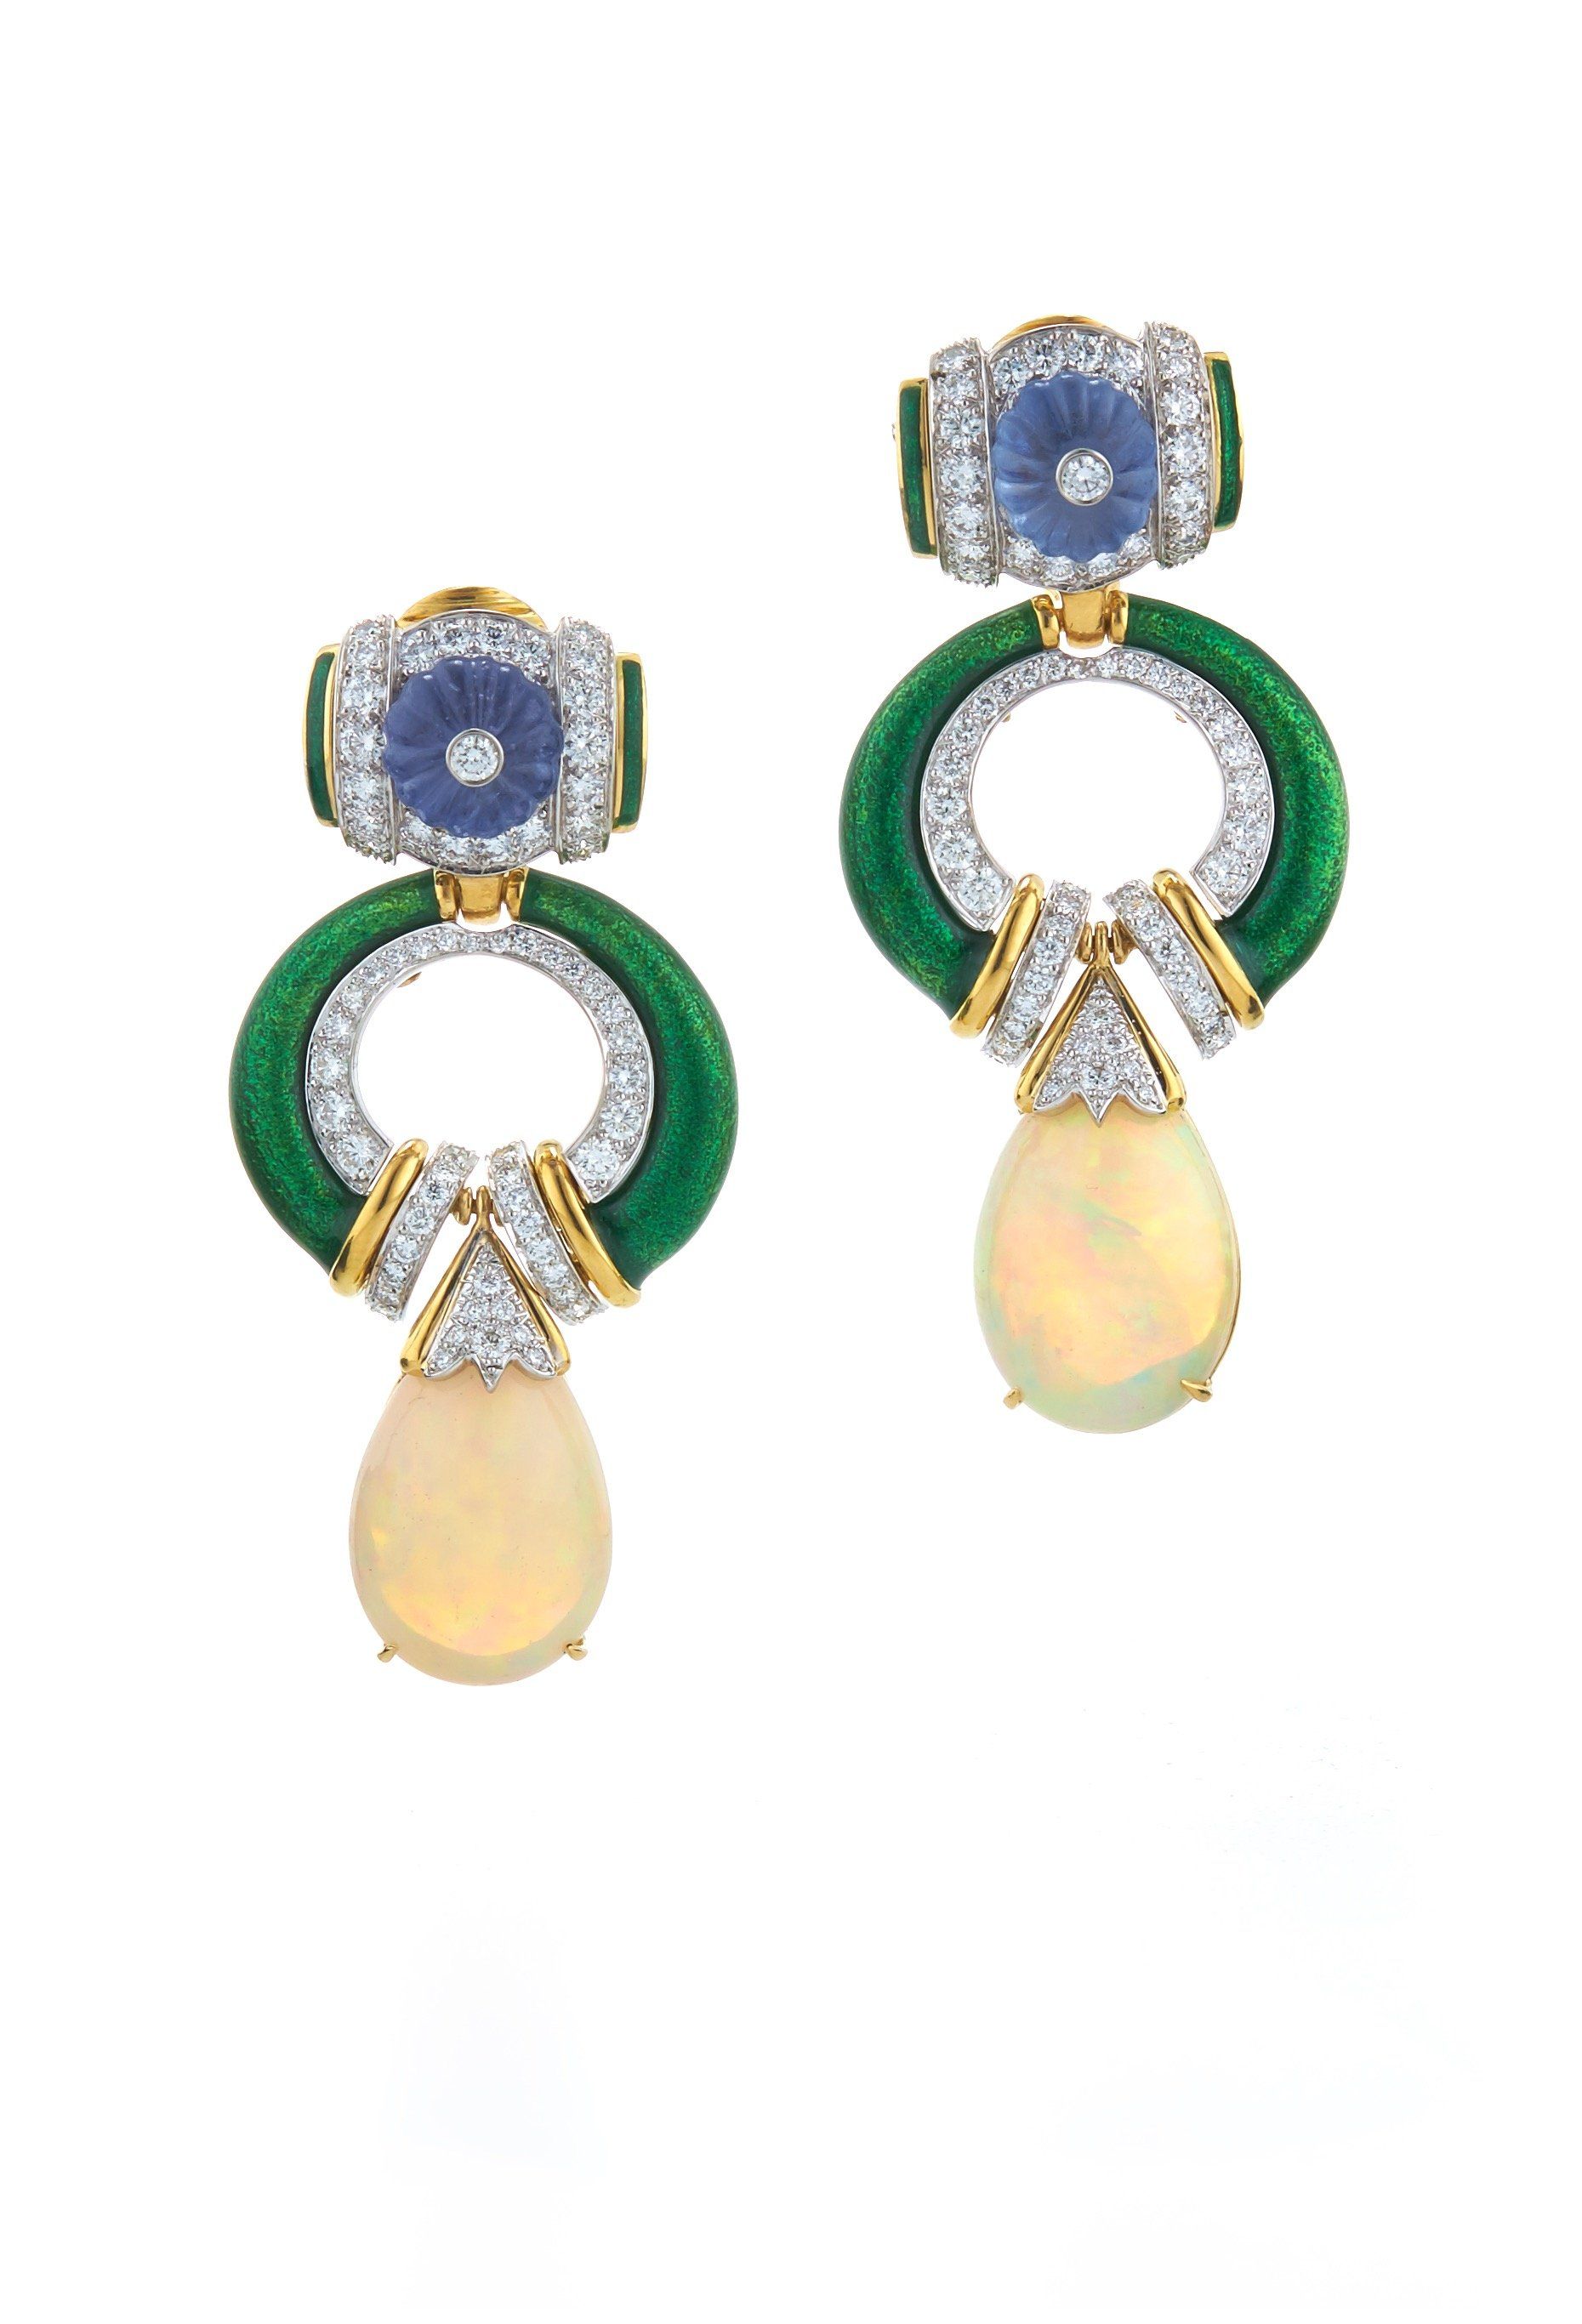 Opal and Enamel Earrings